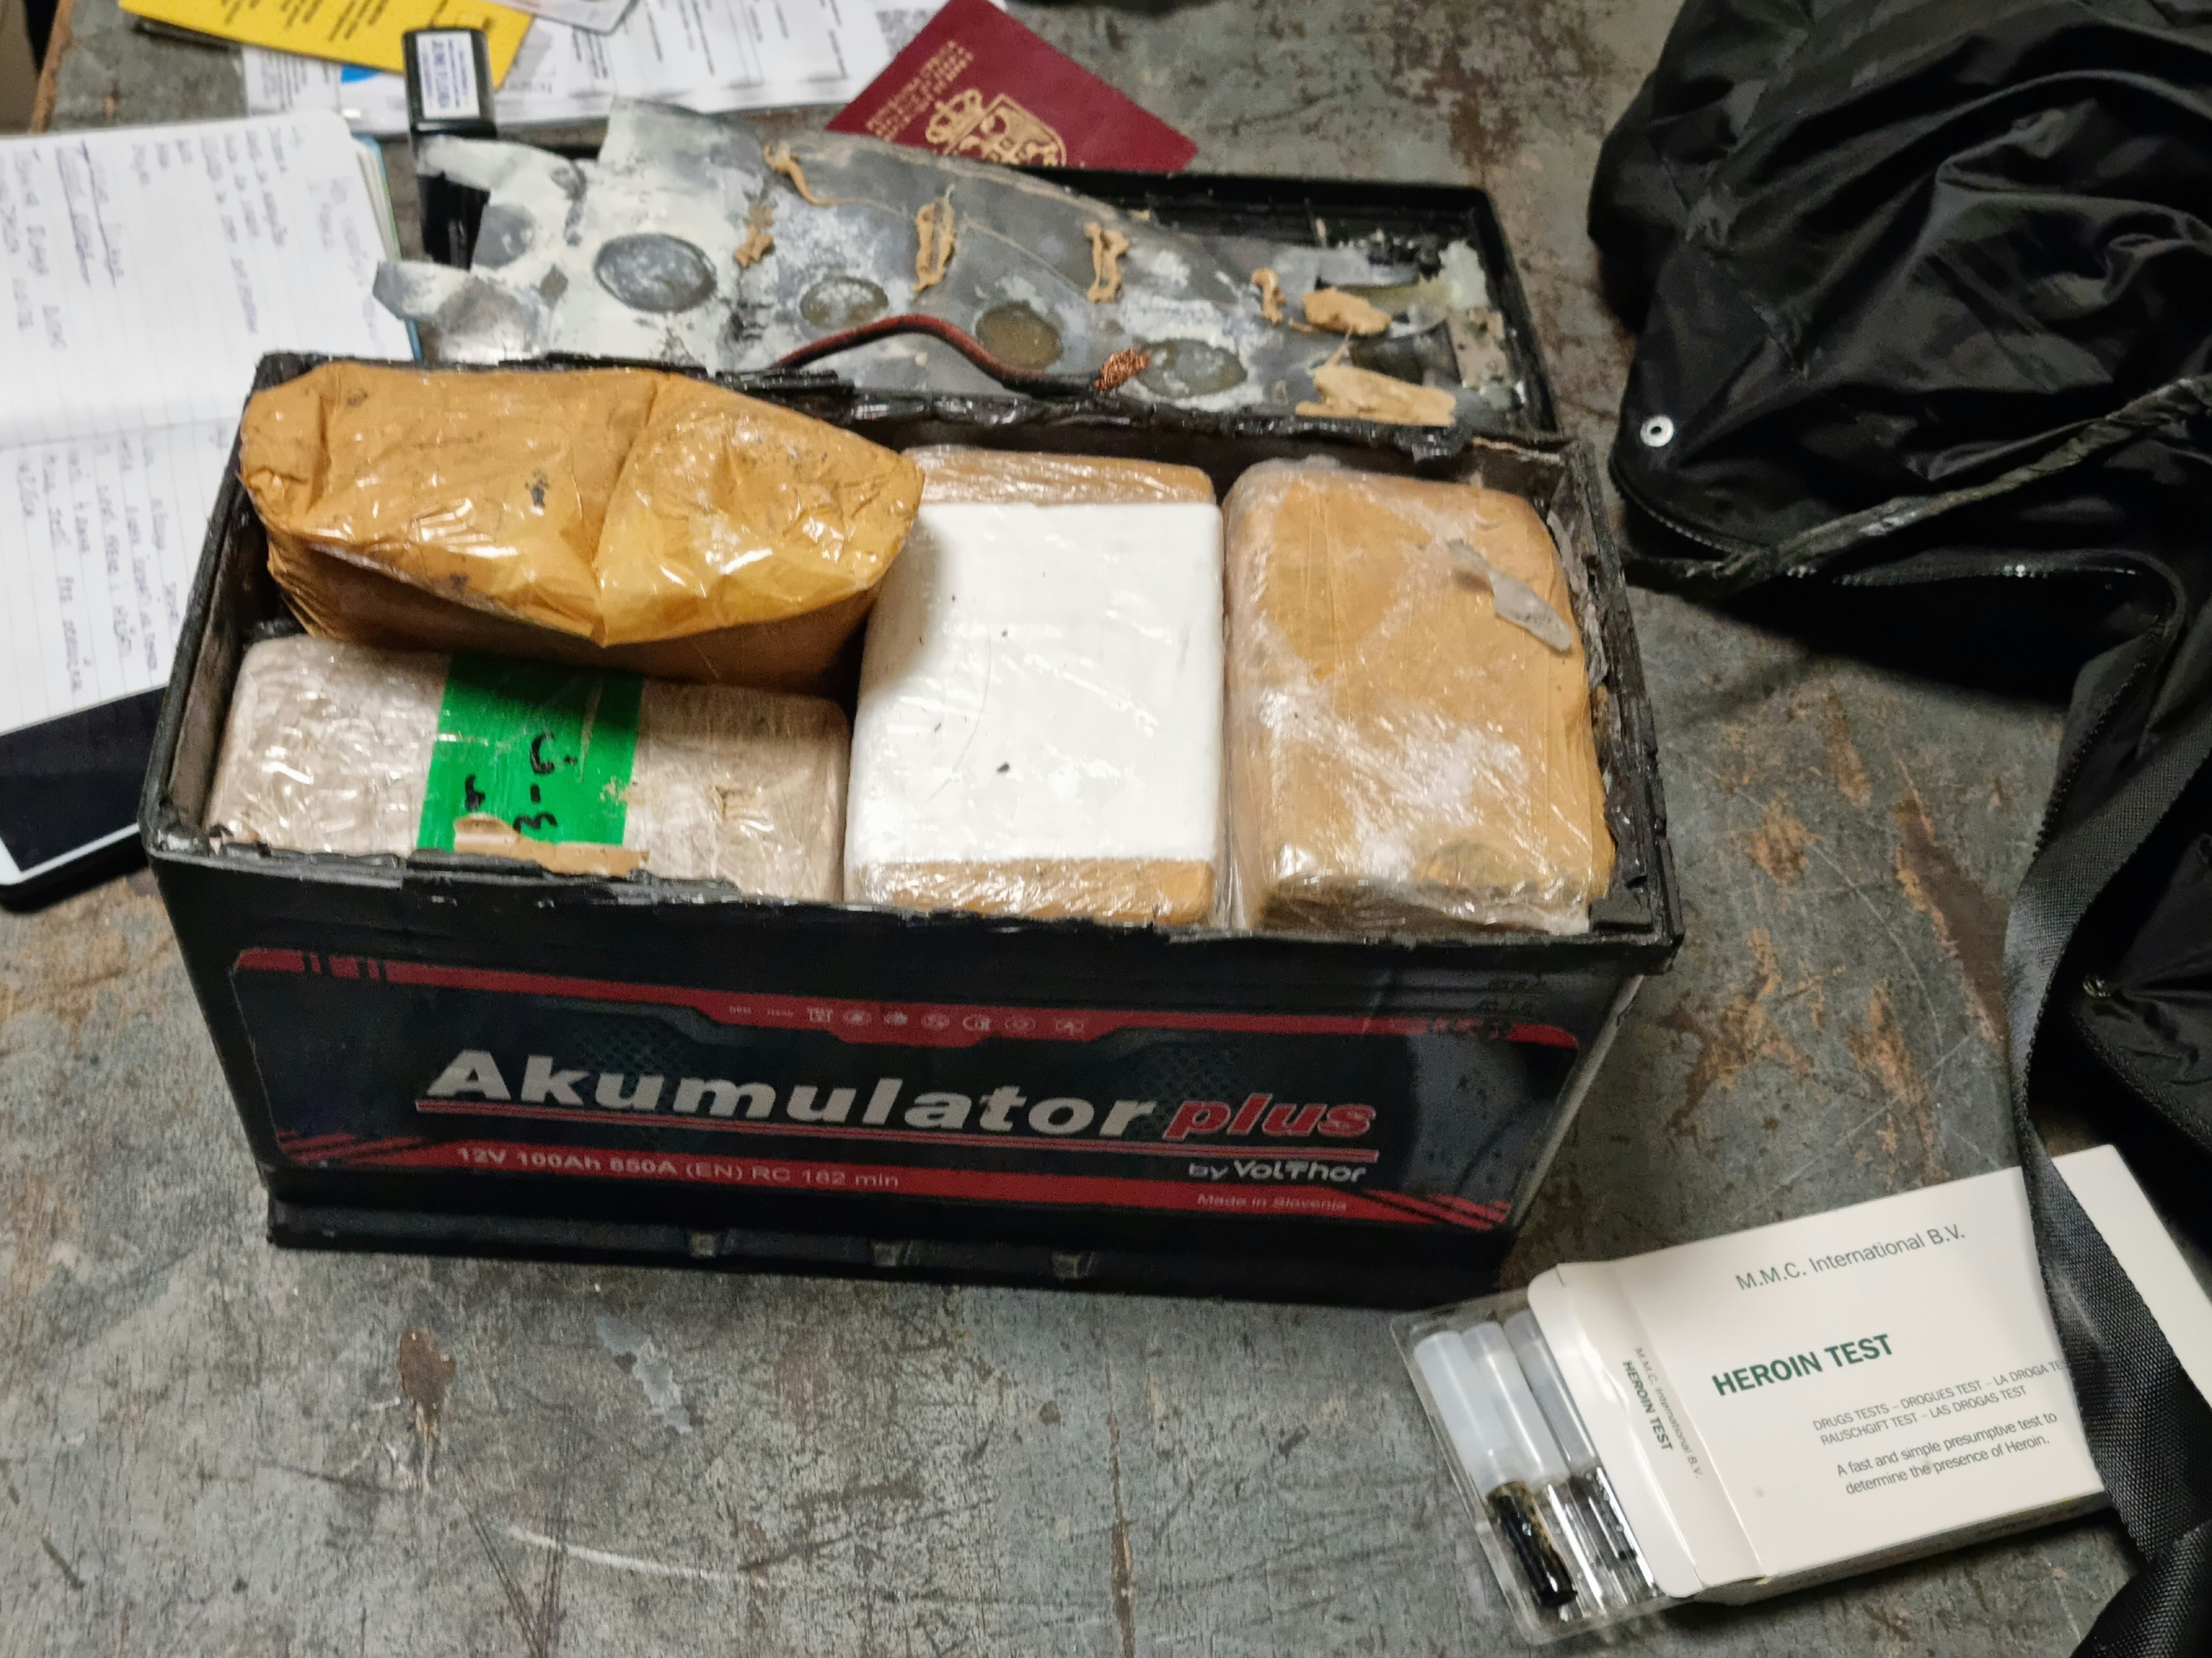 Митничари откриха 5 694 кг хероин скрит в автомобилен акумулатор  
Историята е